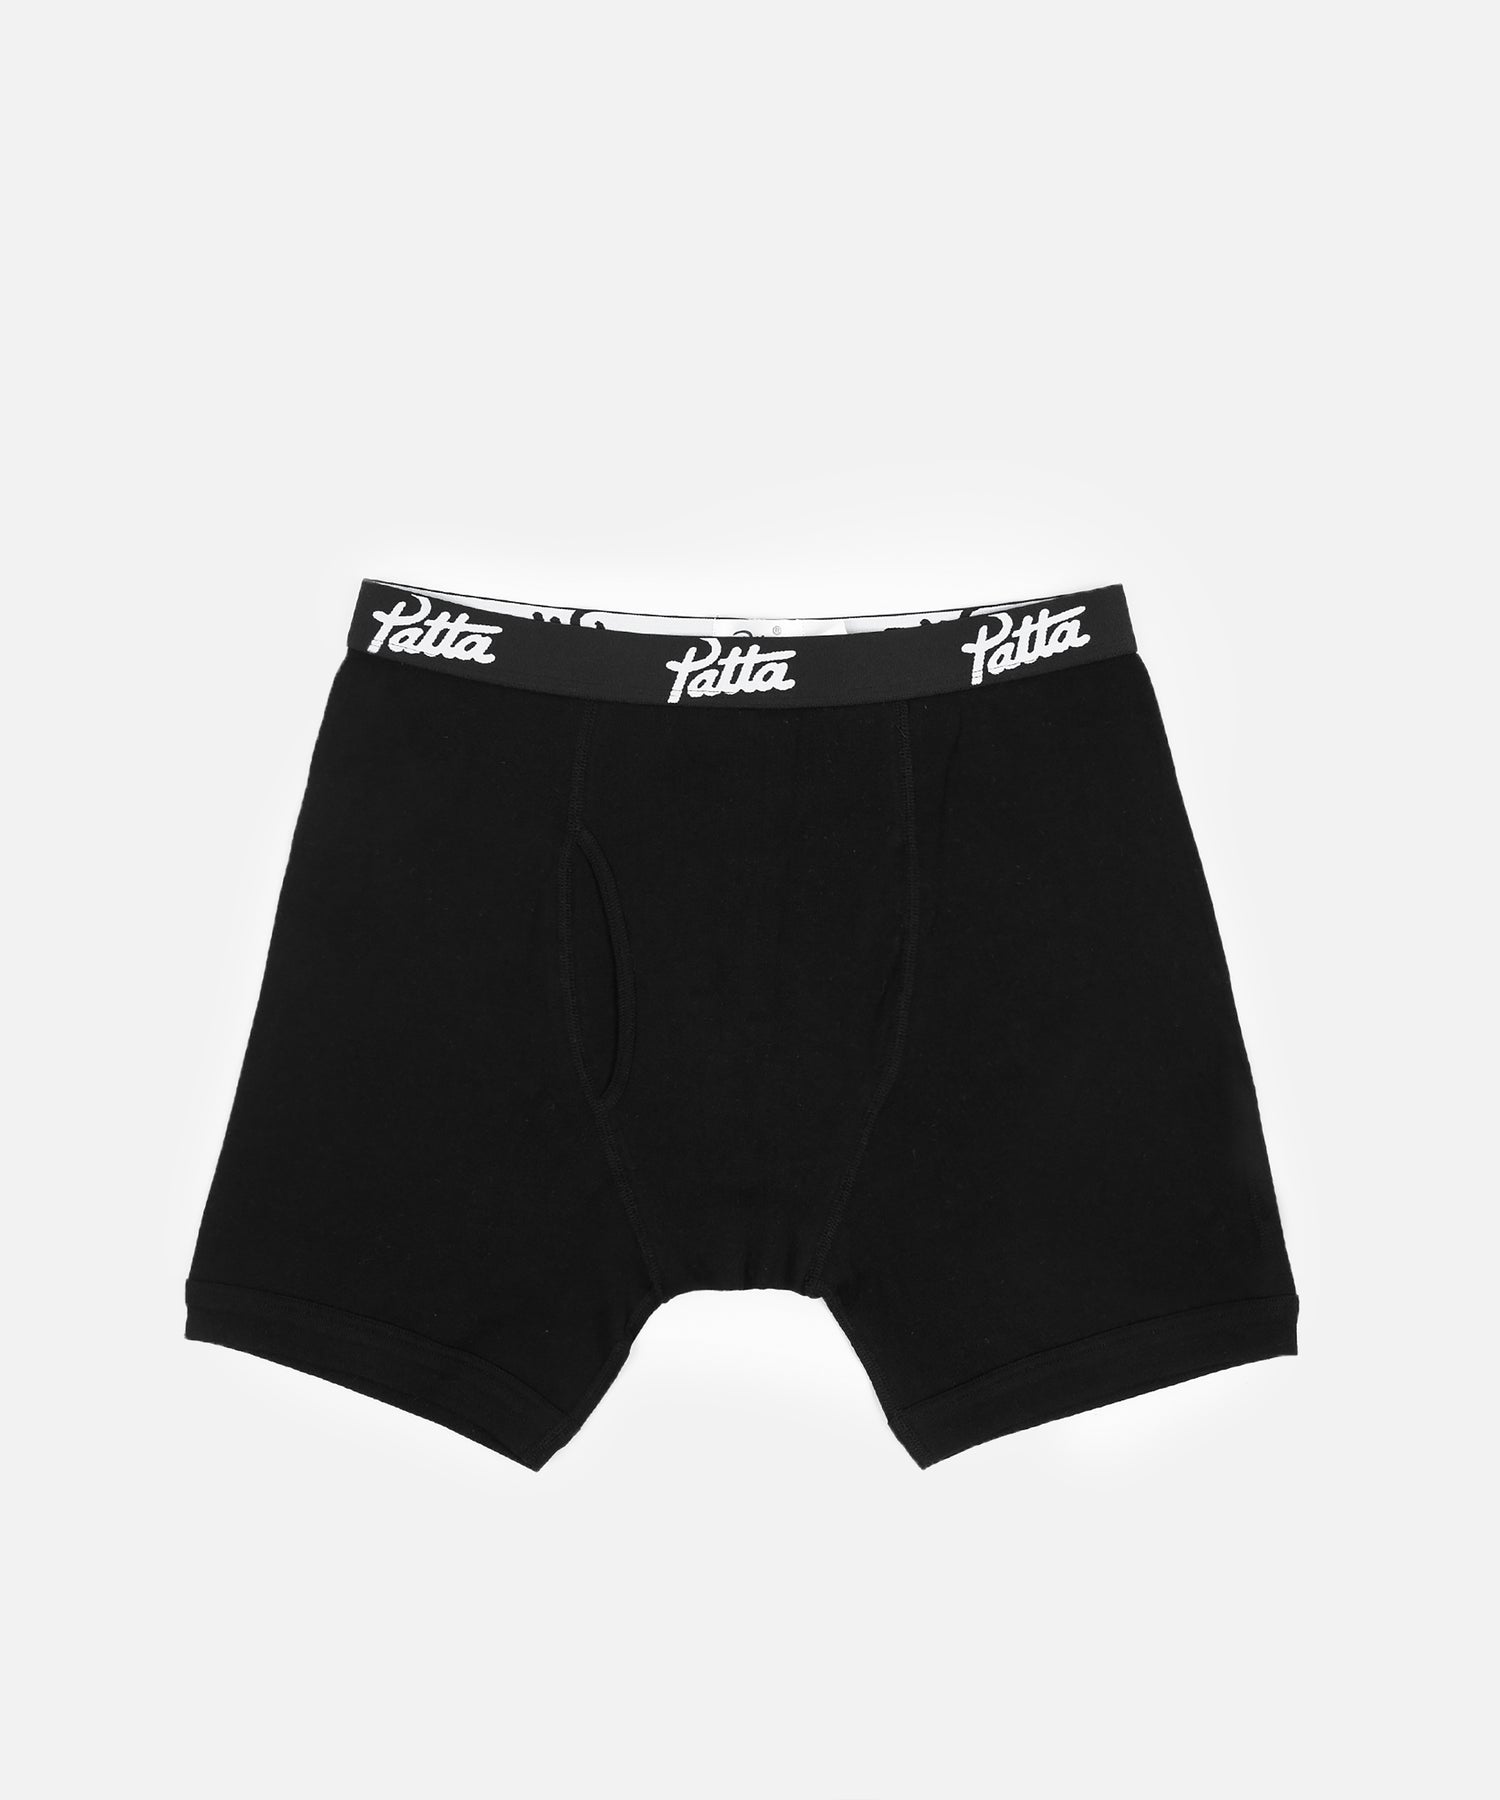 Patta Underwear Boxer Briefs 2-Pack (Black)